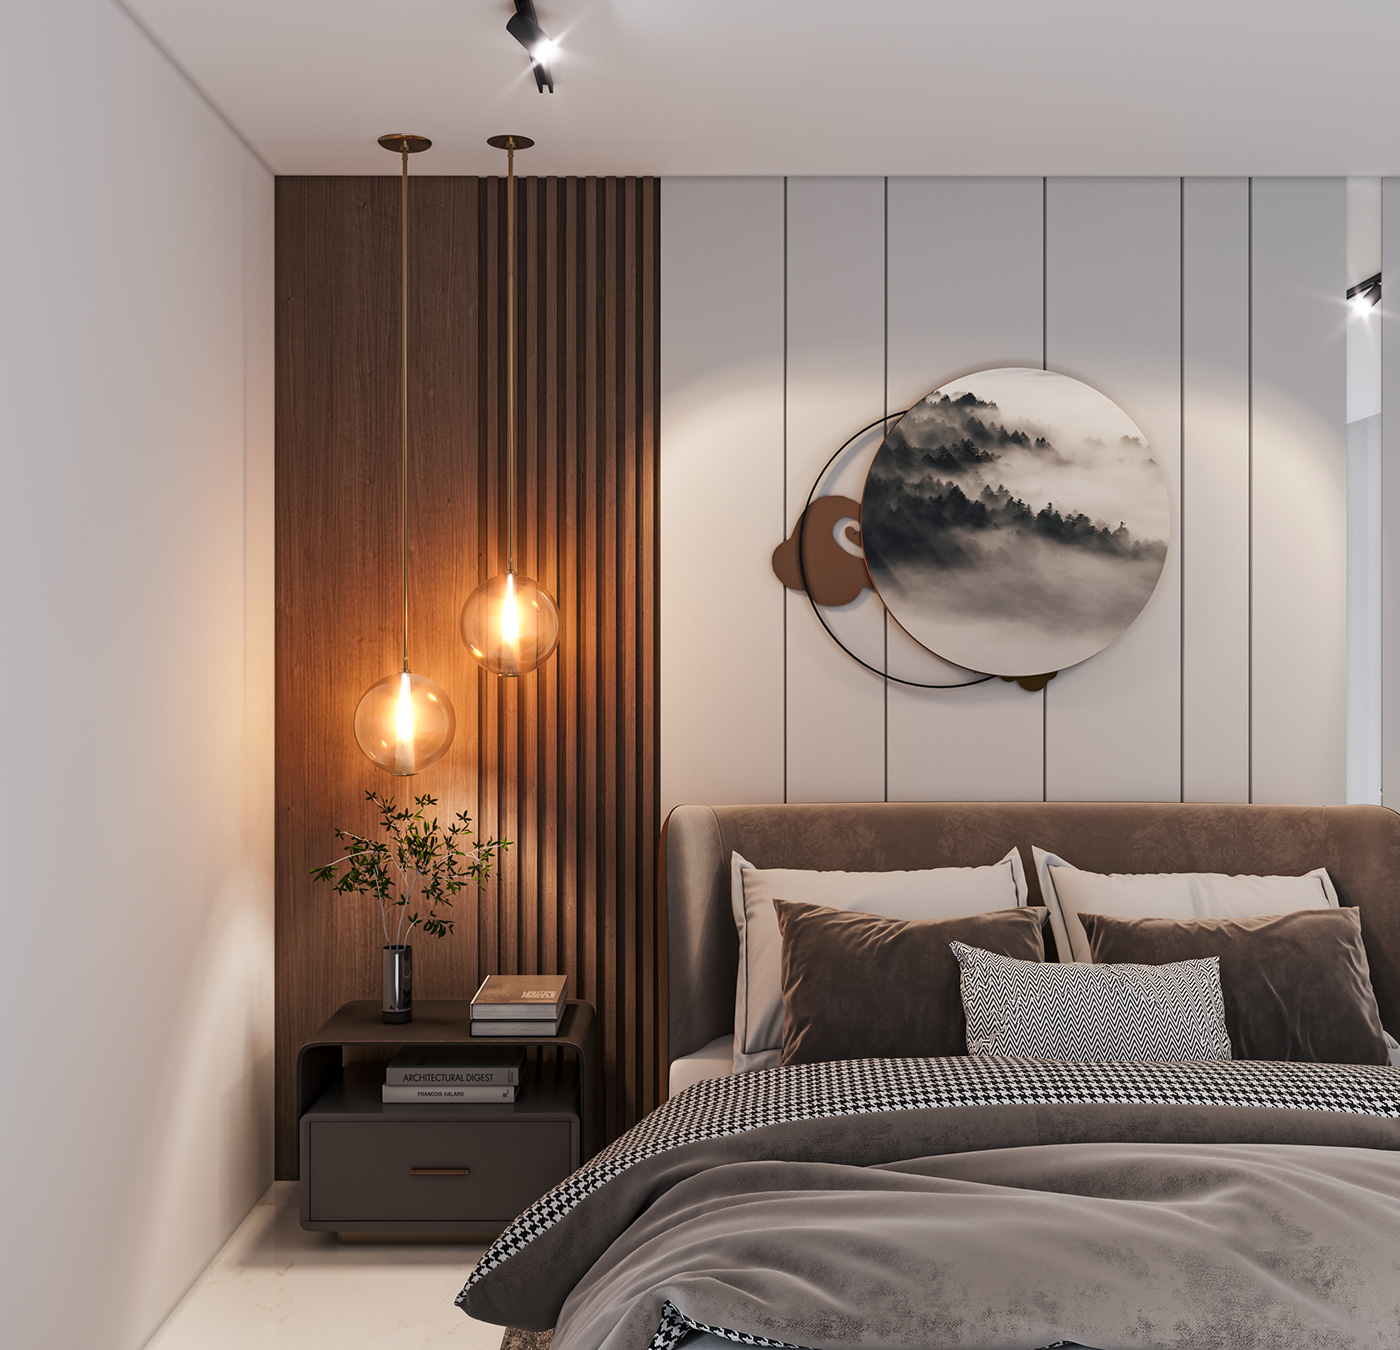 3dmax 3ds max architecture Bedroom interior interior design  Luxury bedroom master bedroom minimal bedroom modern bedroom scandanavian